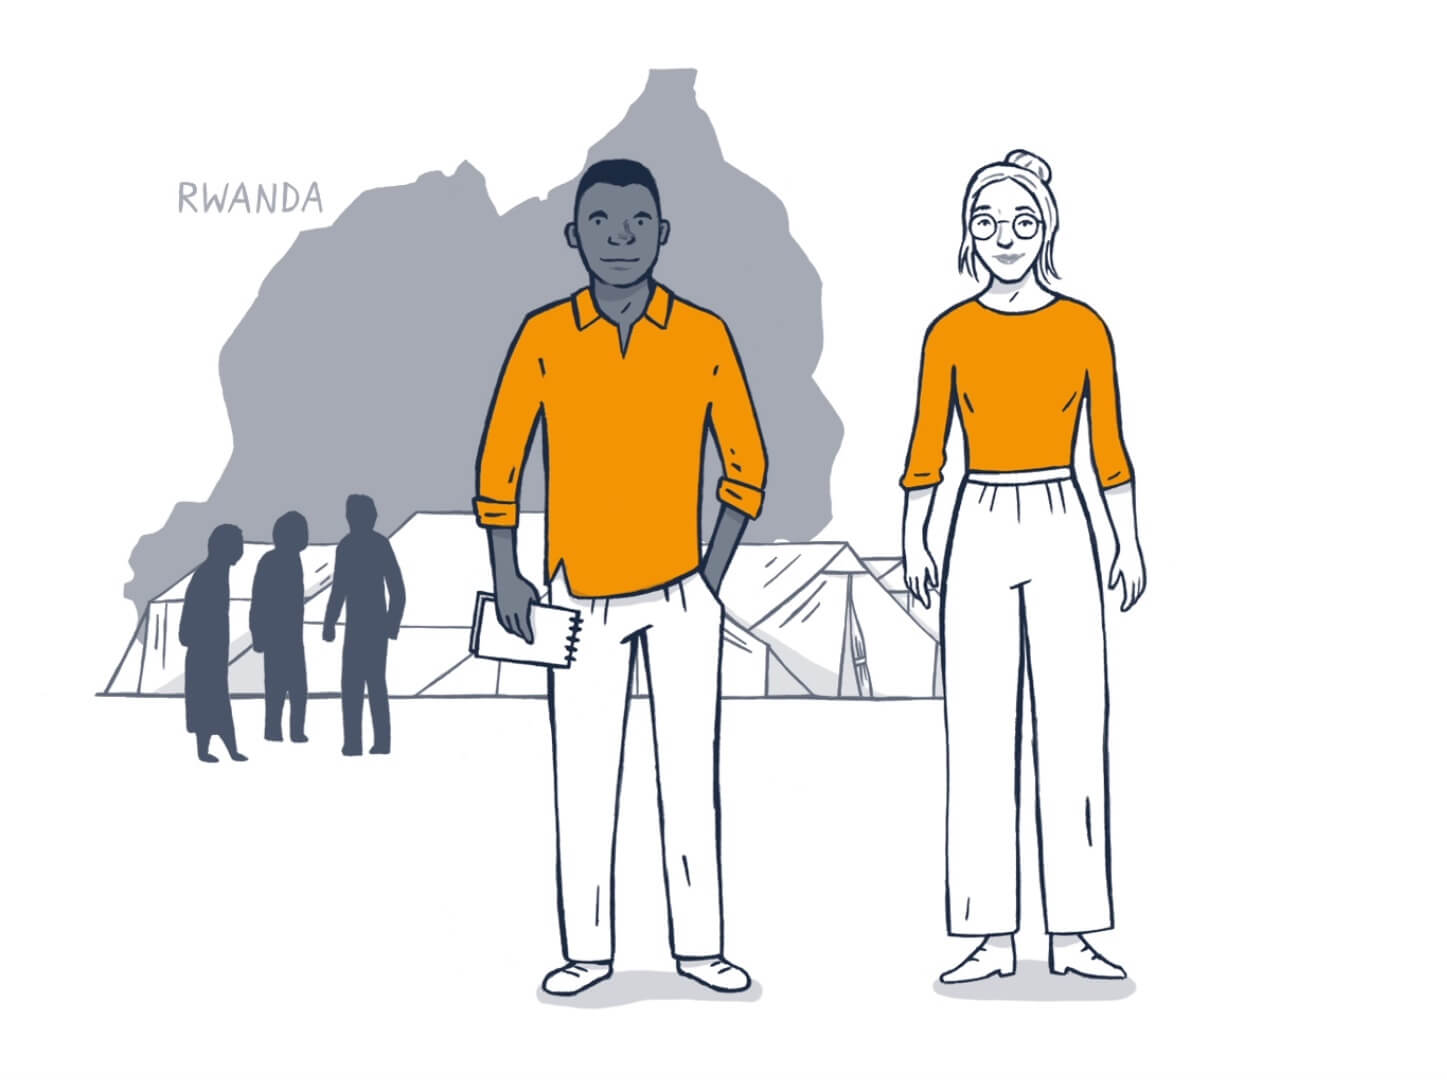 Standbild aus Erklärvideo: ZFD-Mitarbeiterin unterstützt Kongolesen in Ruanda